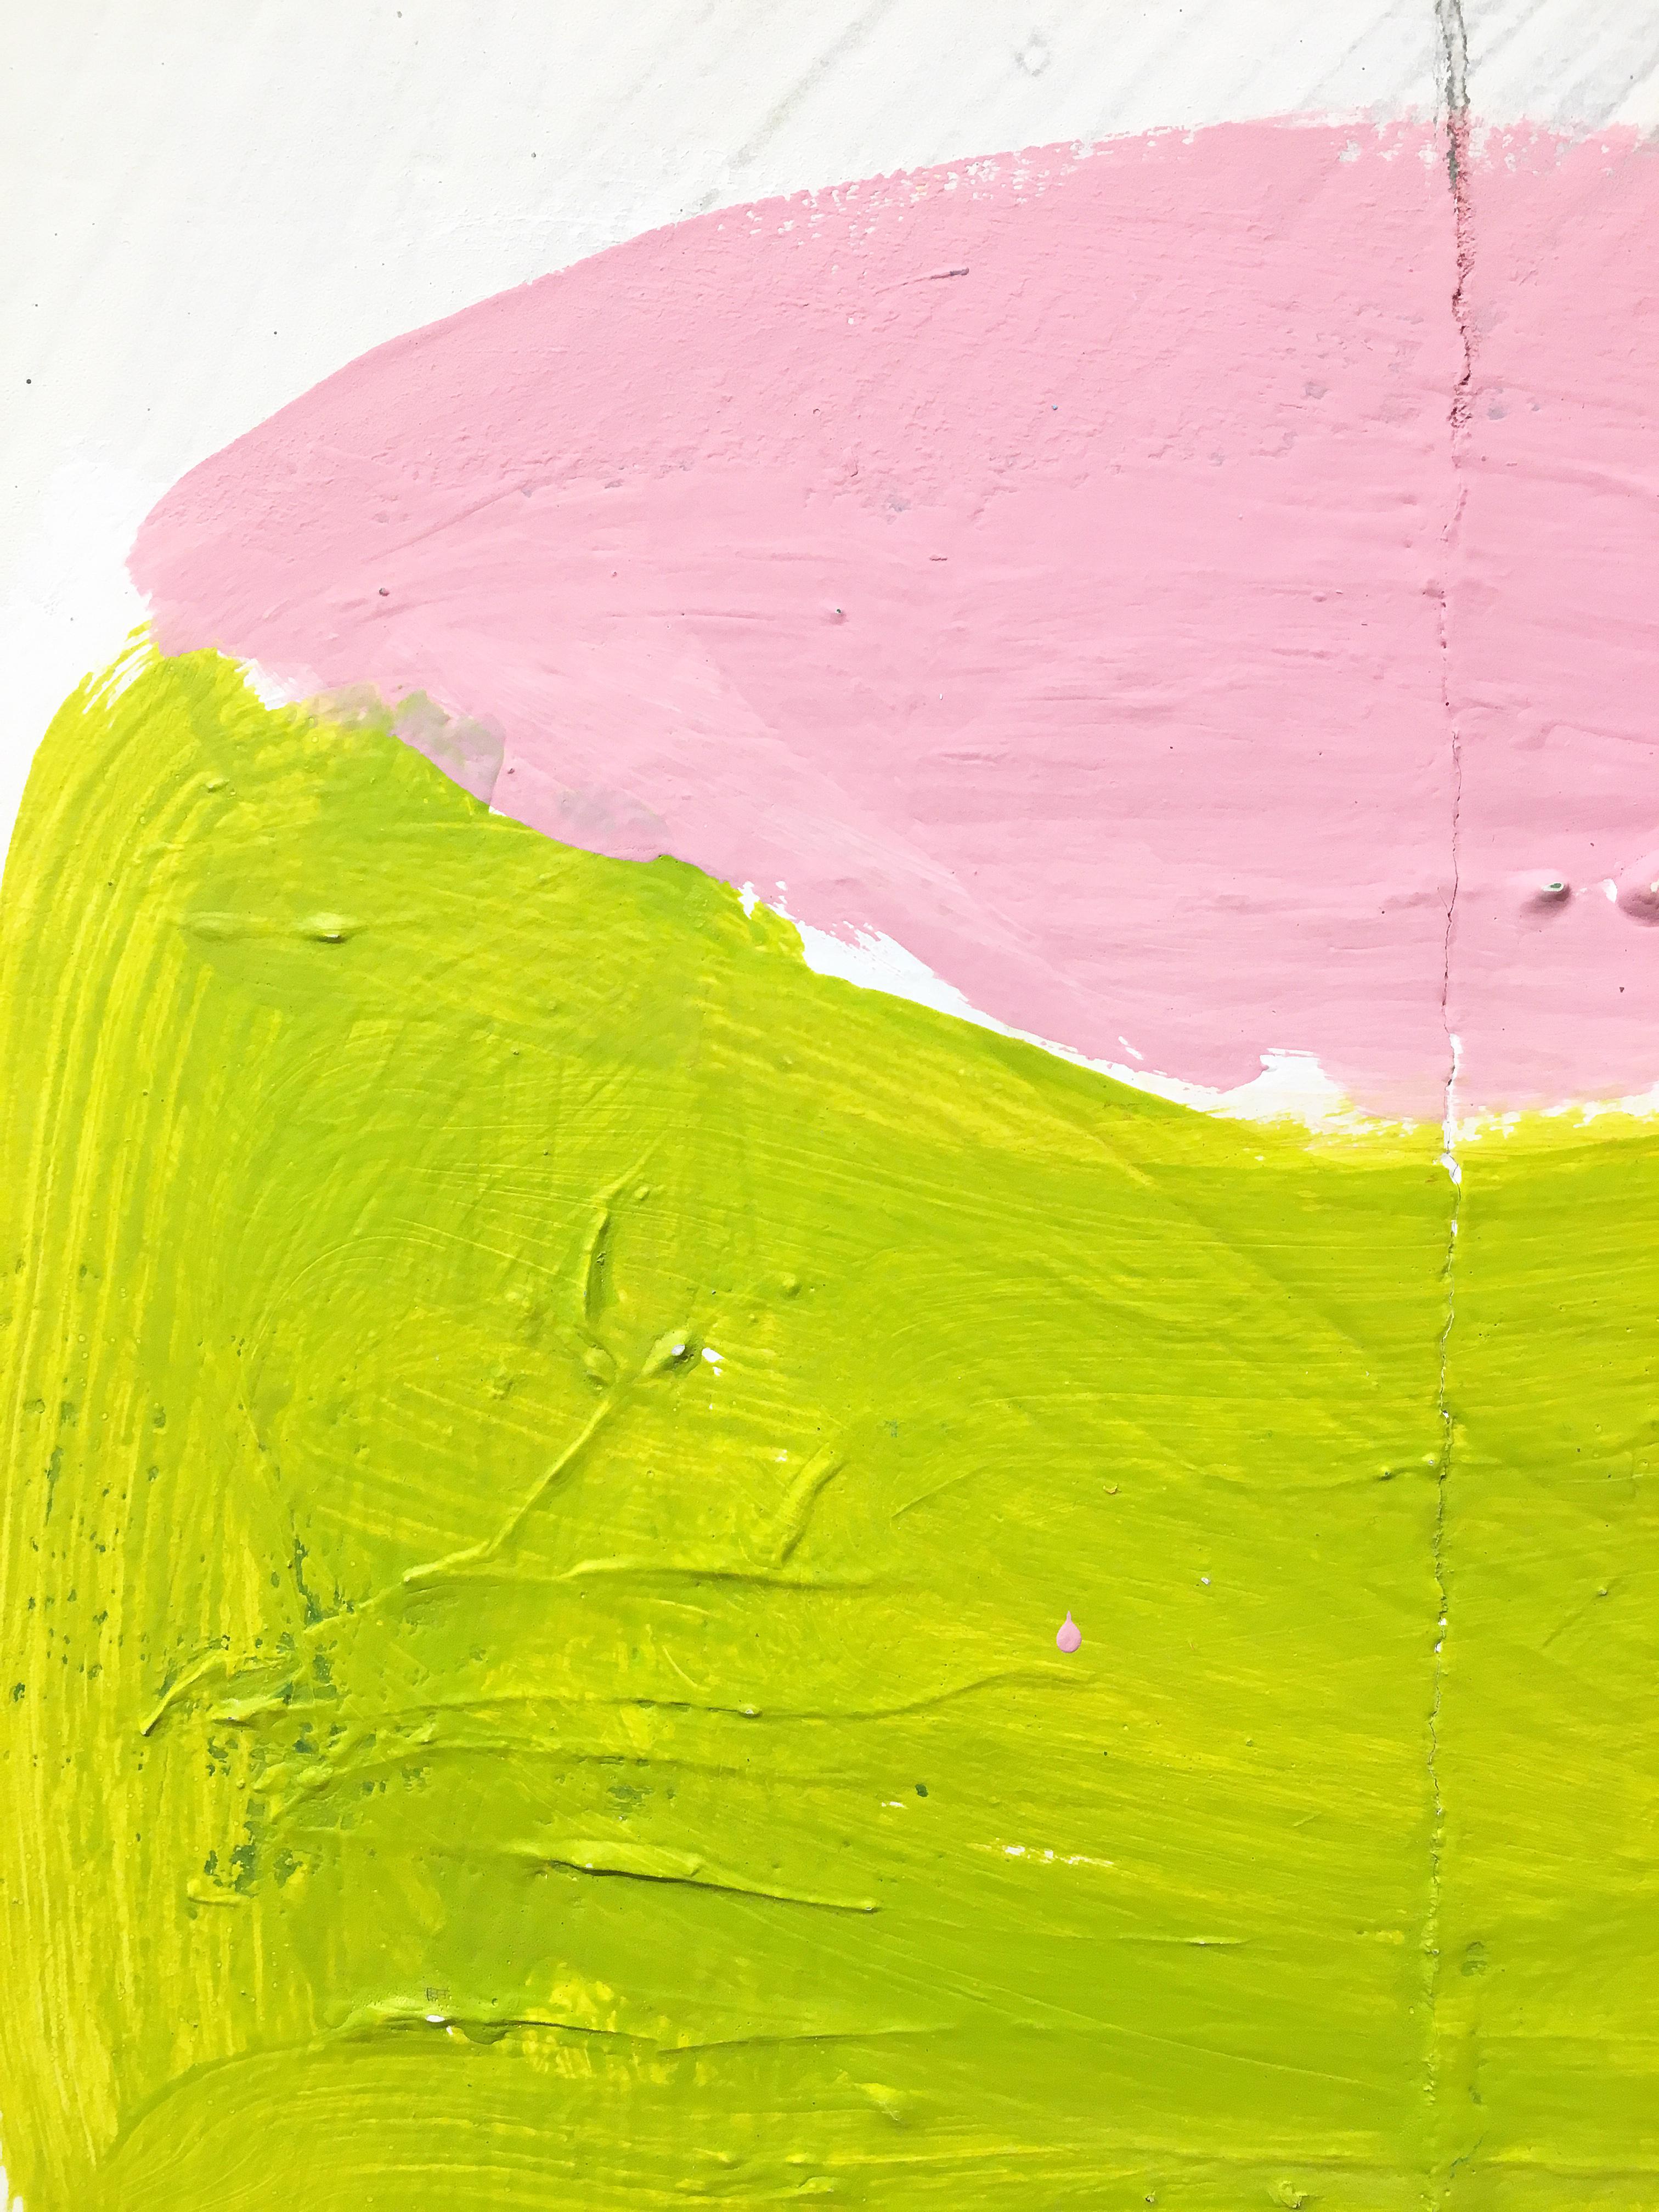 Mixed media painting of cake, Gary Komarin, Cake (Pink & Lime) 4